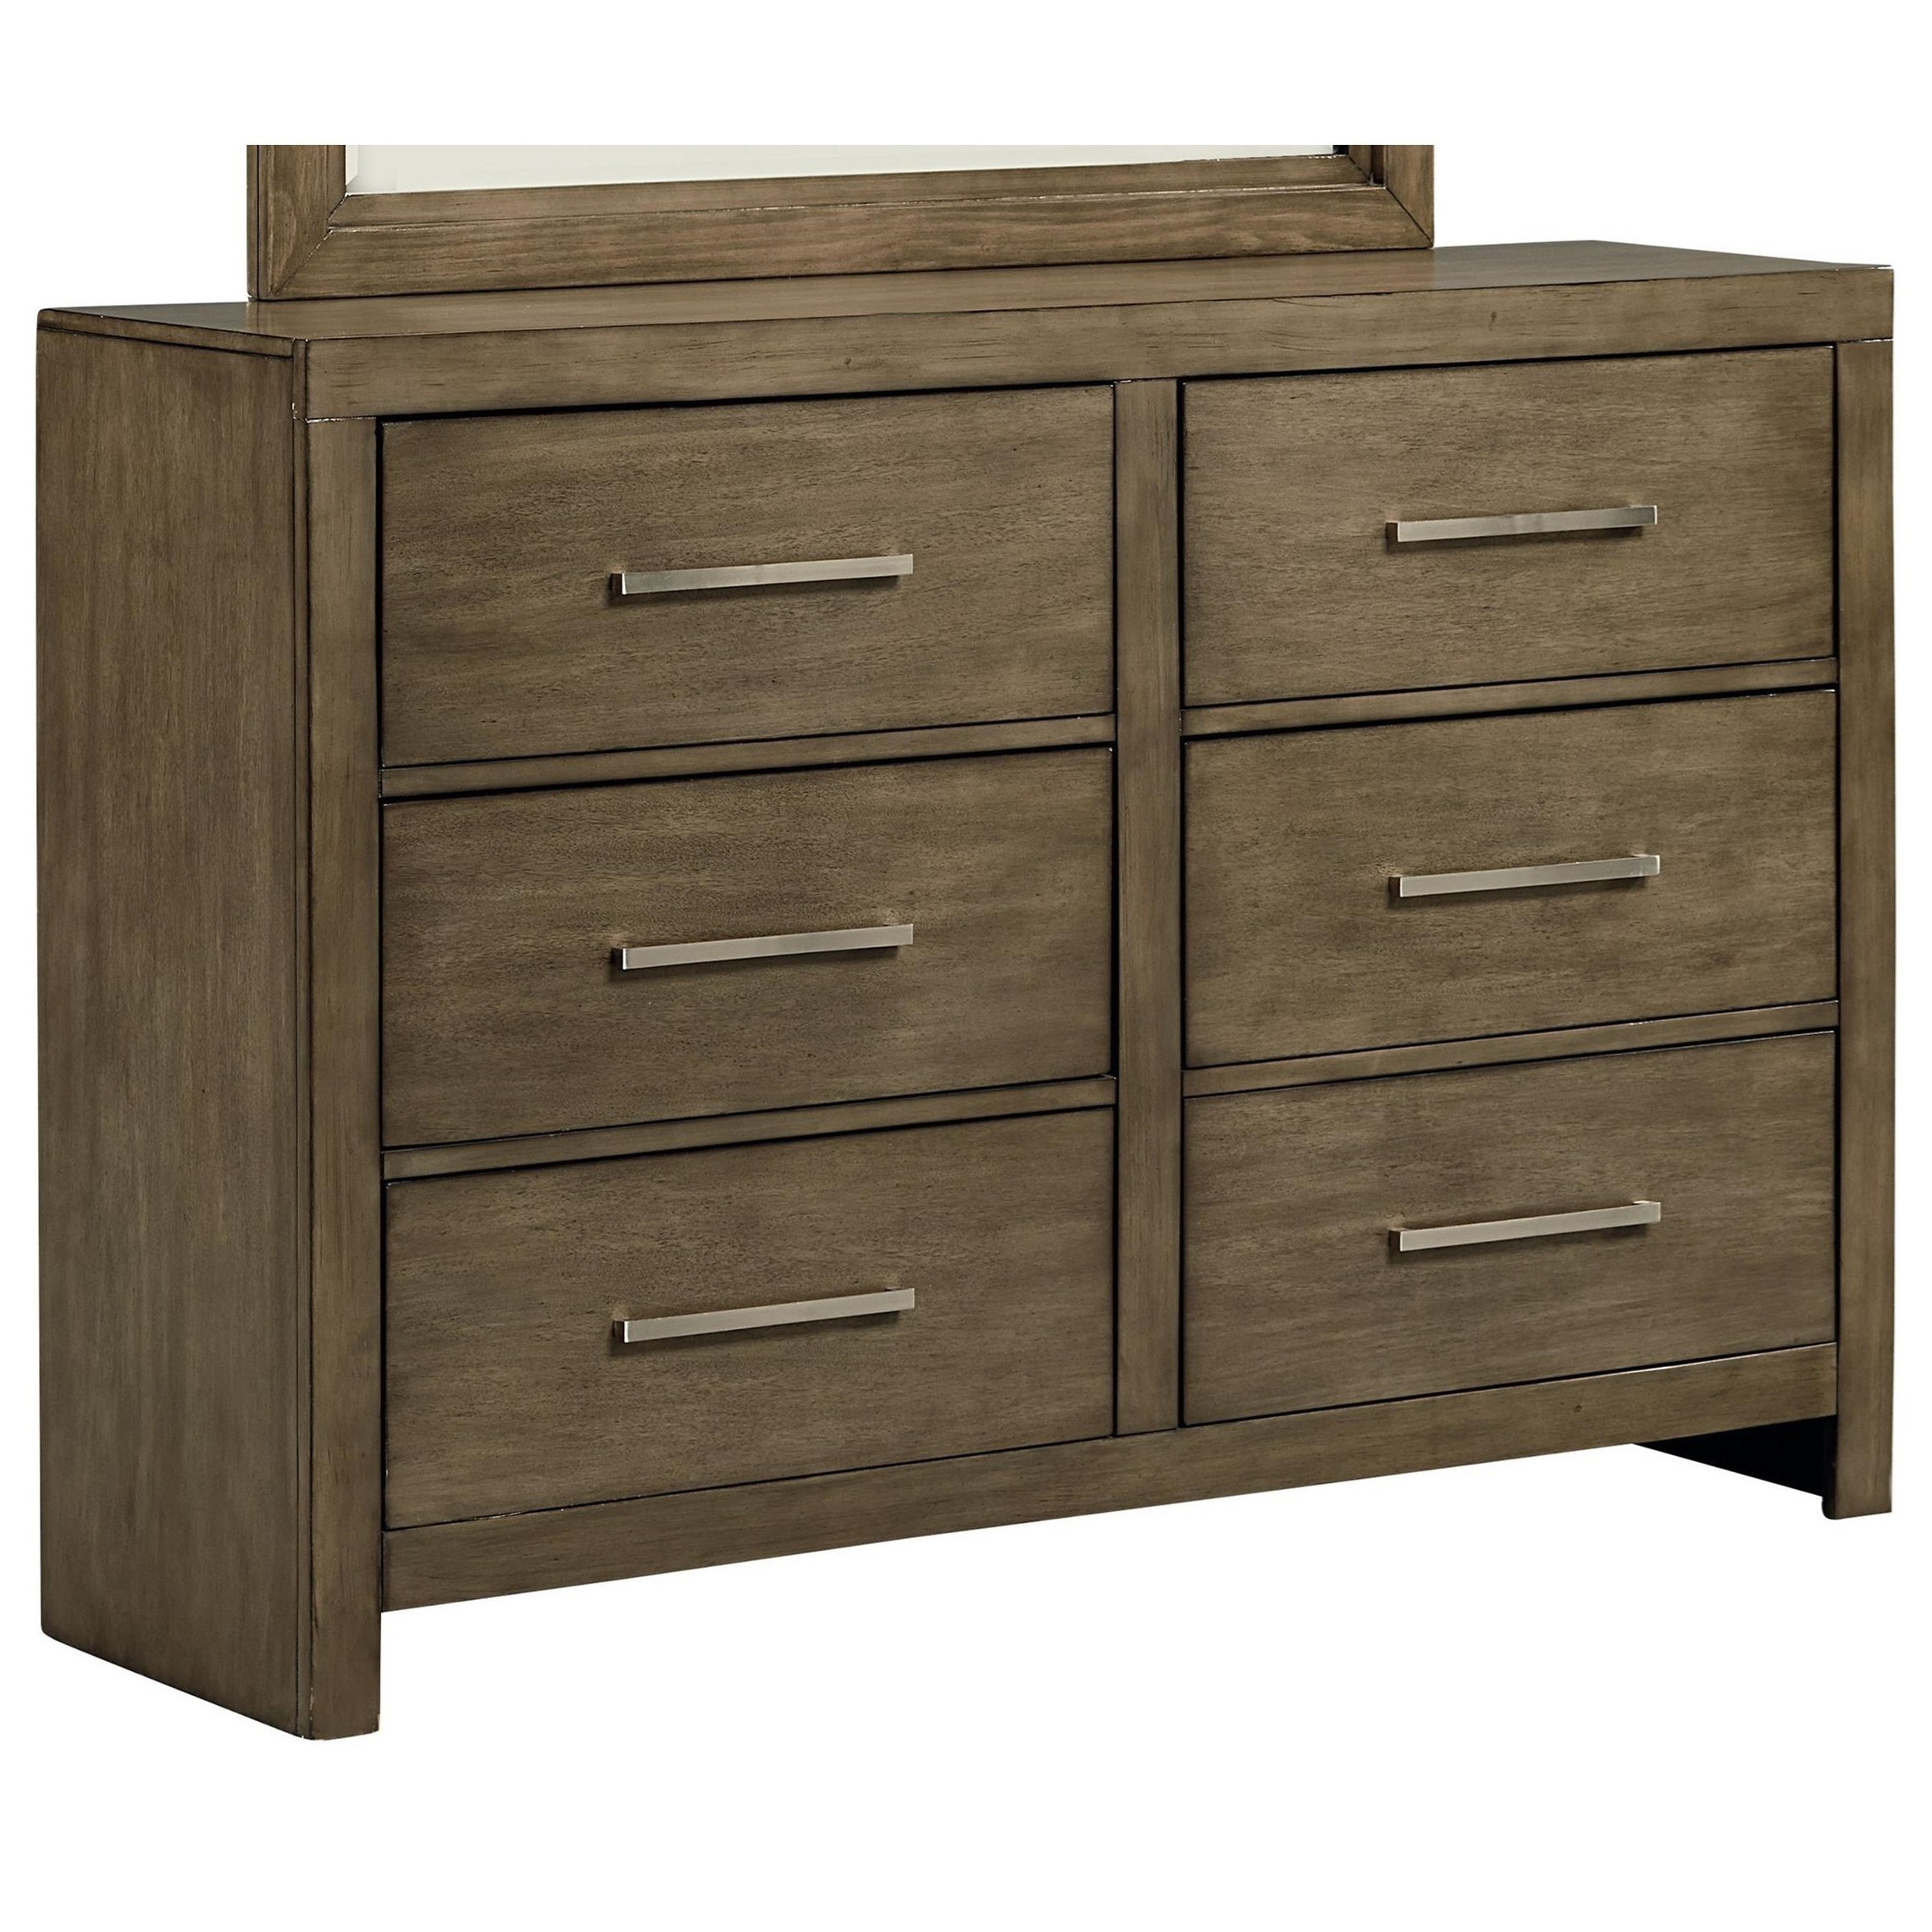 Standard Furniture Cachet Contemporary Six Drawer Dresser | Bullard